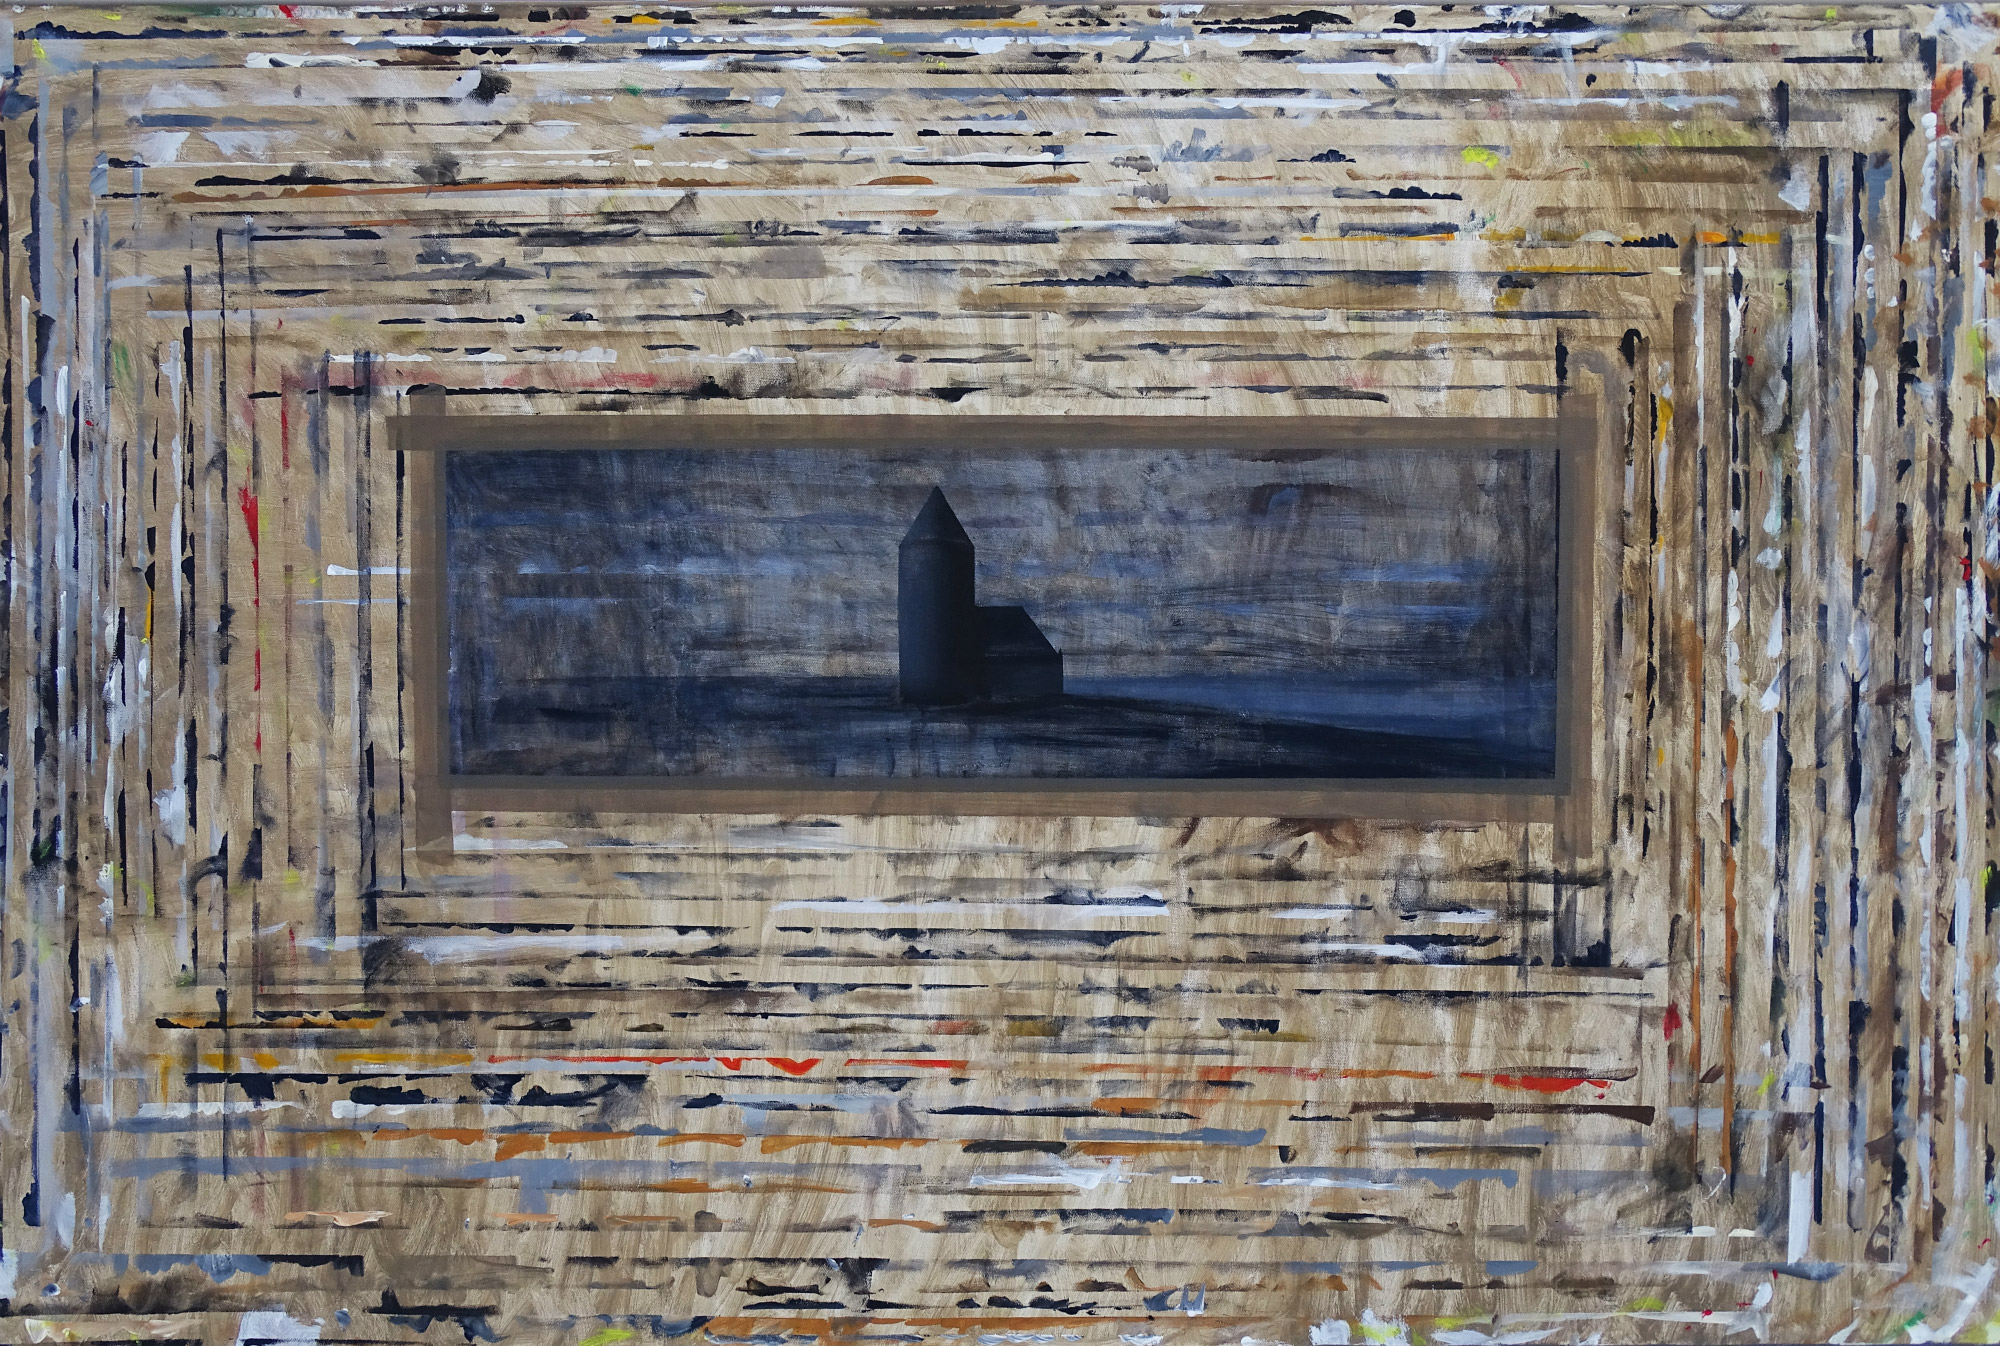 Dariusz Mlącki, Deska z obrazkiem z kościółkiem, 2016 , akryl i olej na płótnie,150 × 100 cm (źródło: materiały prasowe)